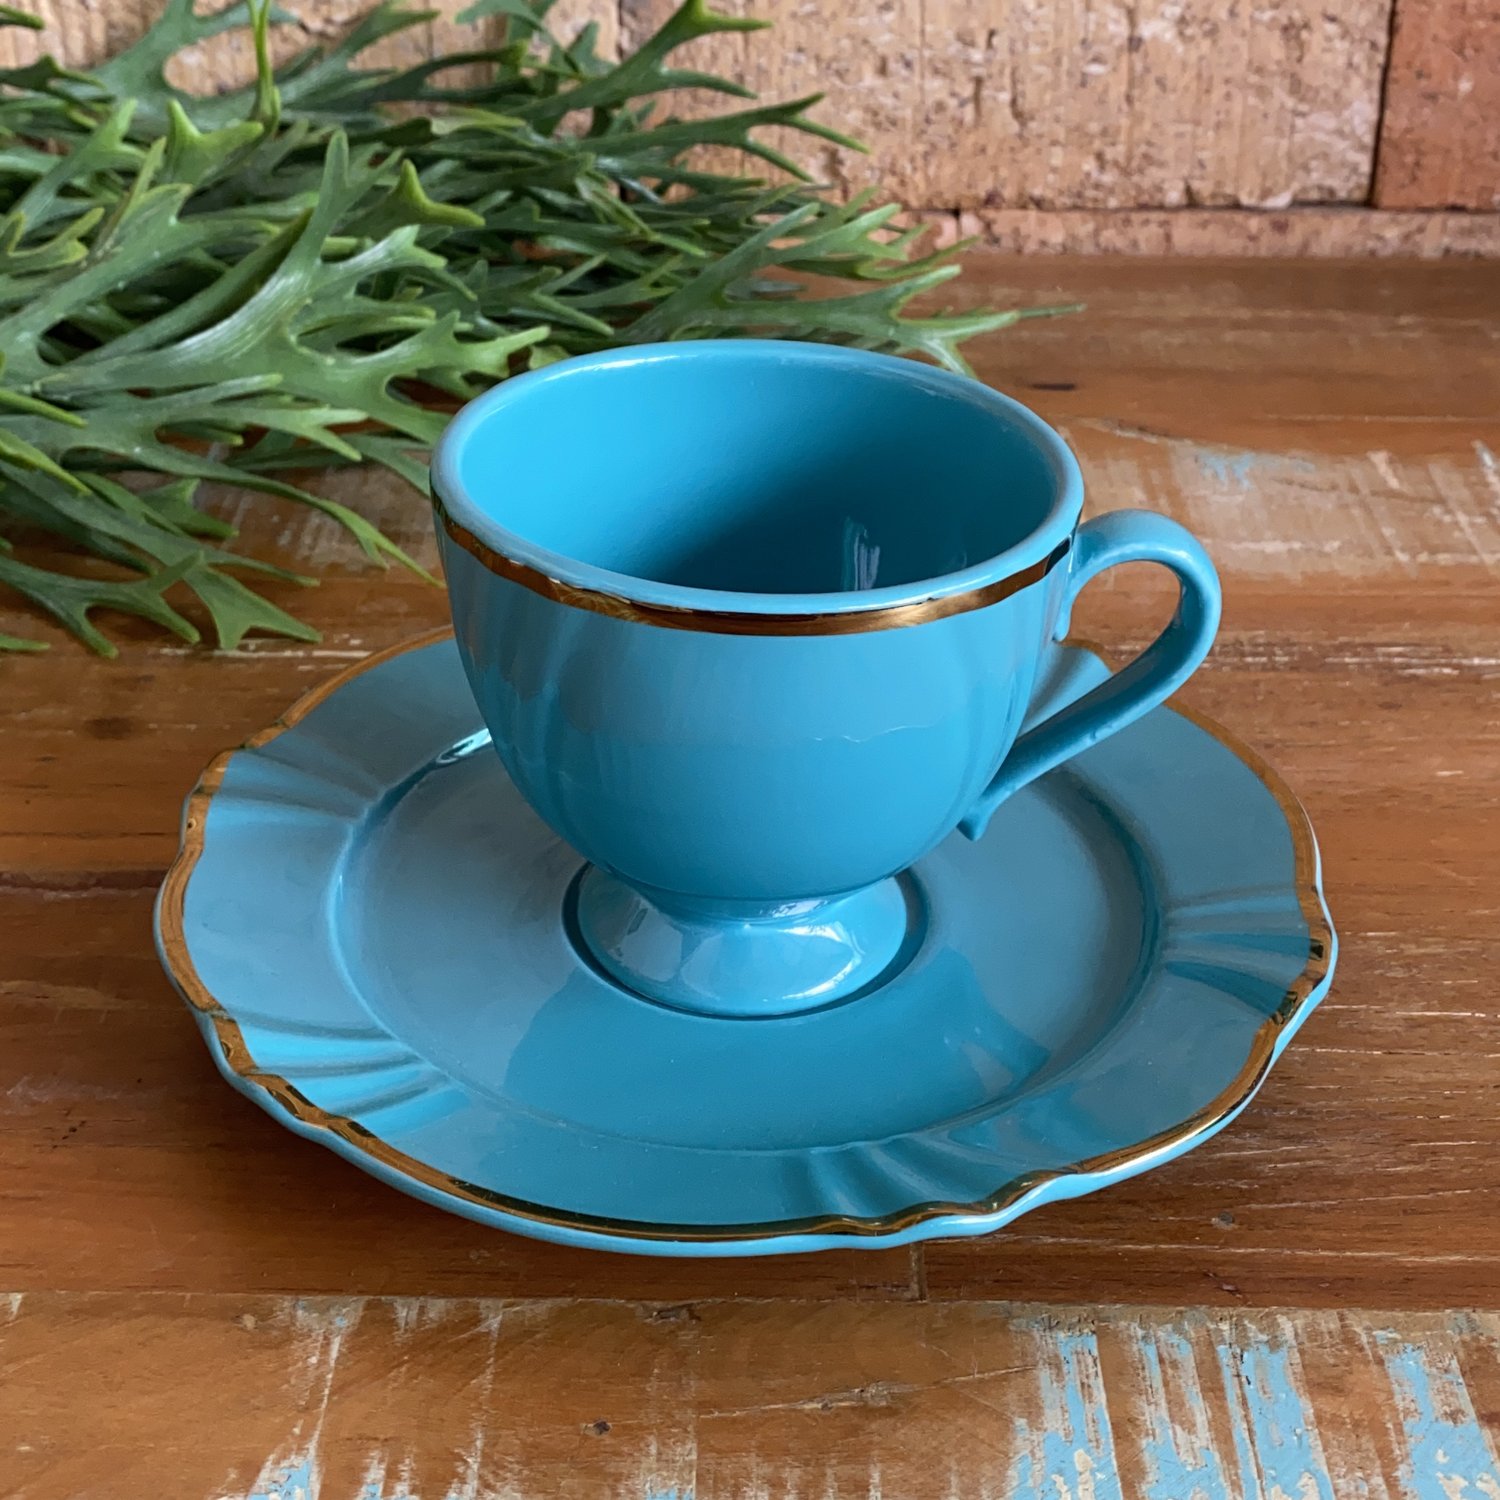 Jogo de Xícaras de Chá Azul Royal Porcelana Oxford 200ml 6